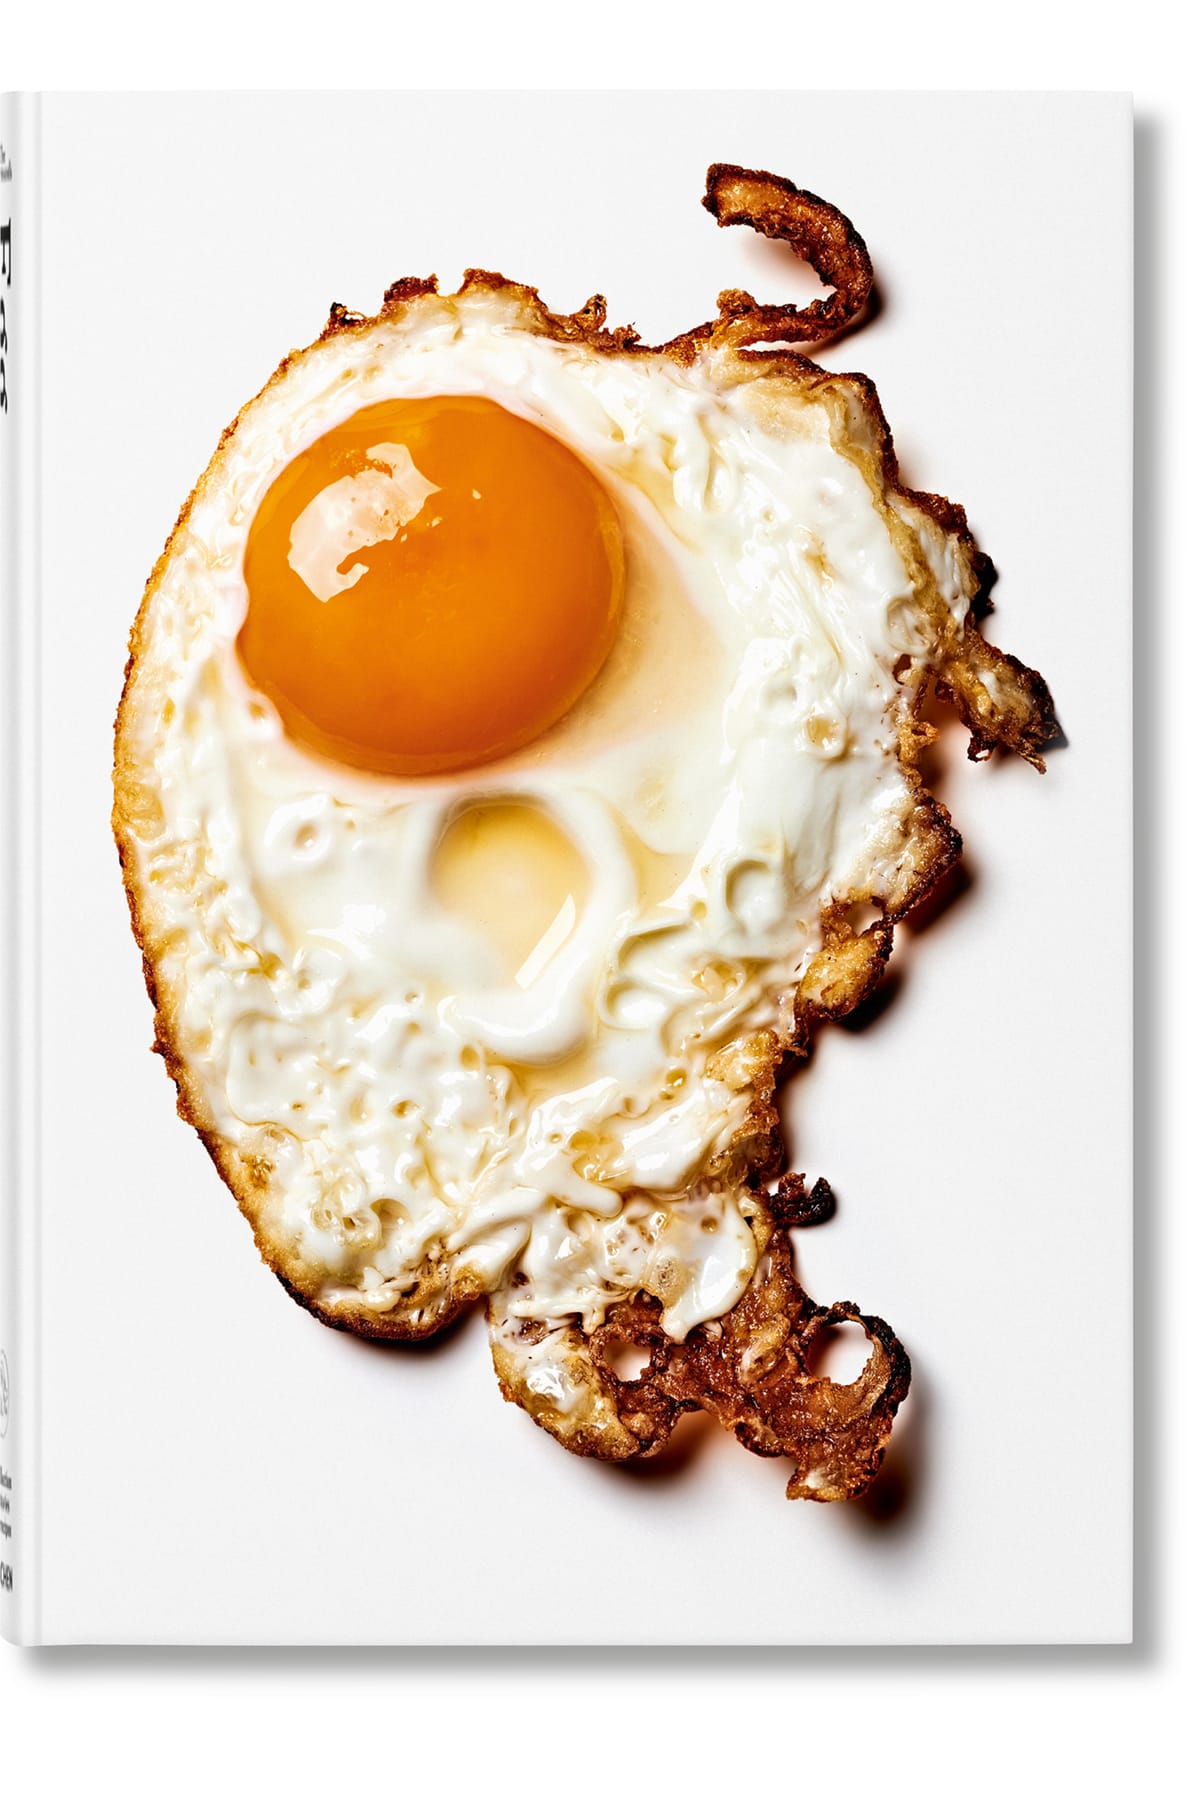 Buch The Gourmand. Eier. Geschichten und Rezepte Buch Taschen 